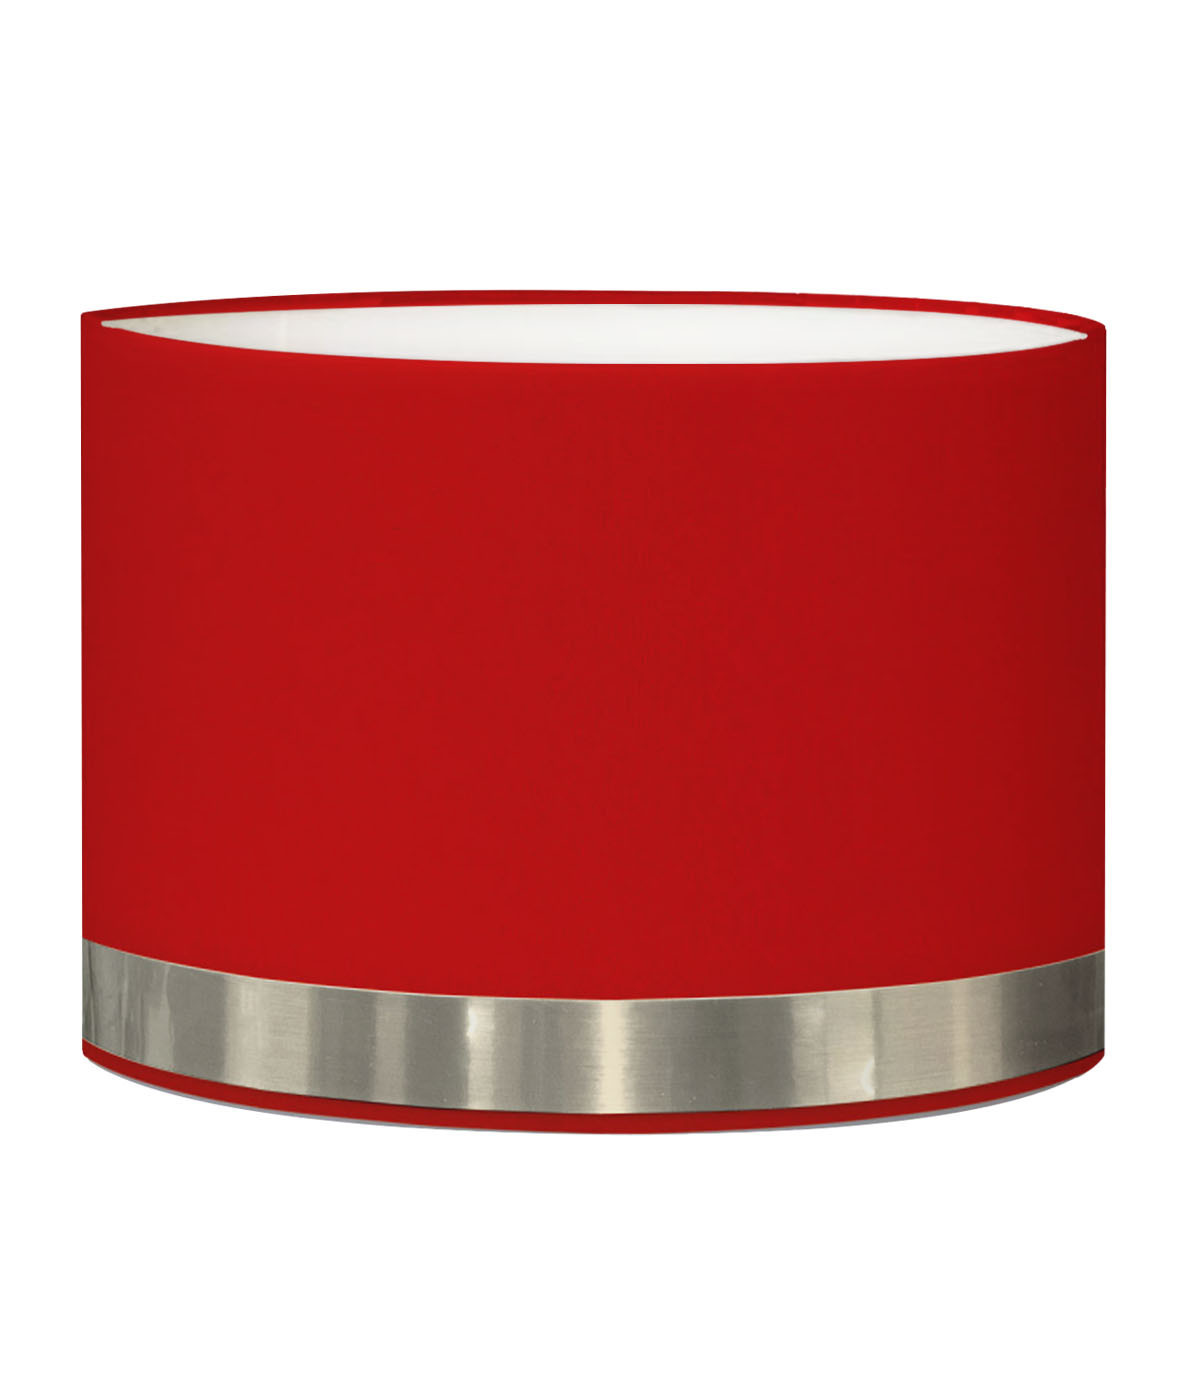 Abat-jour pour chevet rond rouge jonc aluminium T 25 x H 20